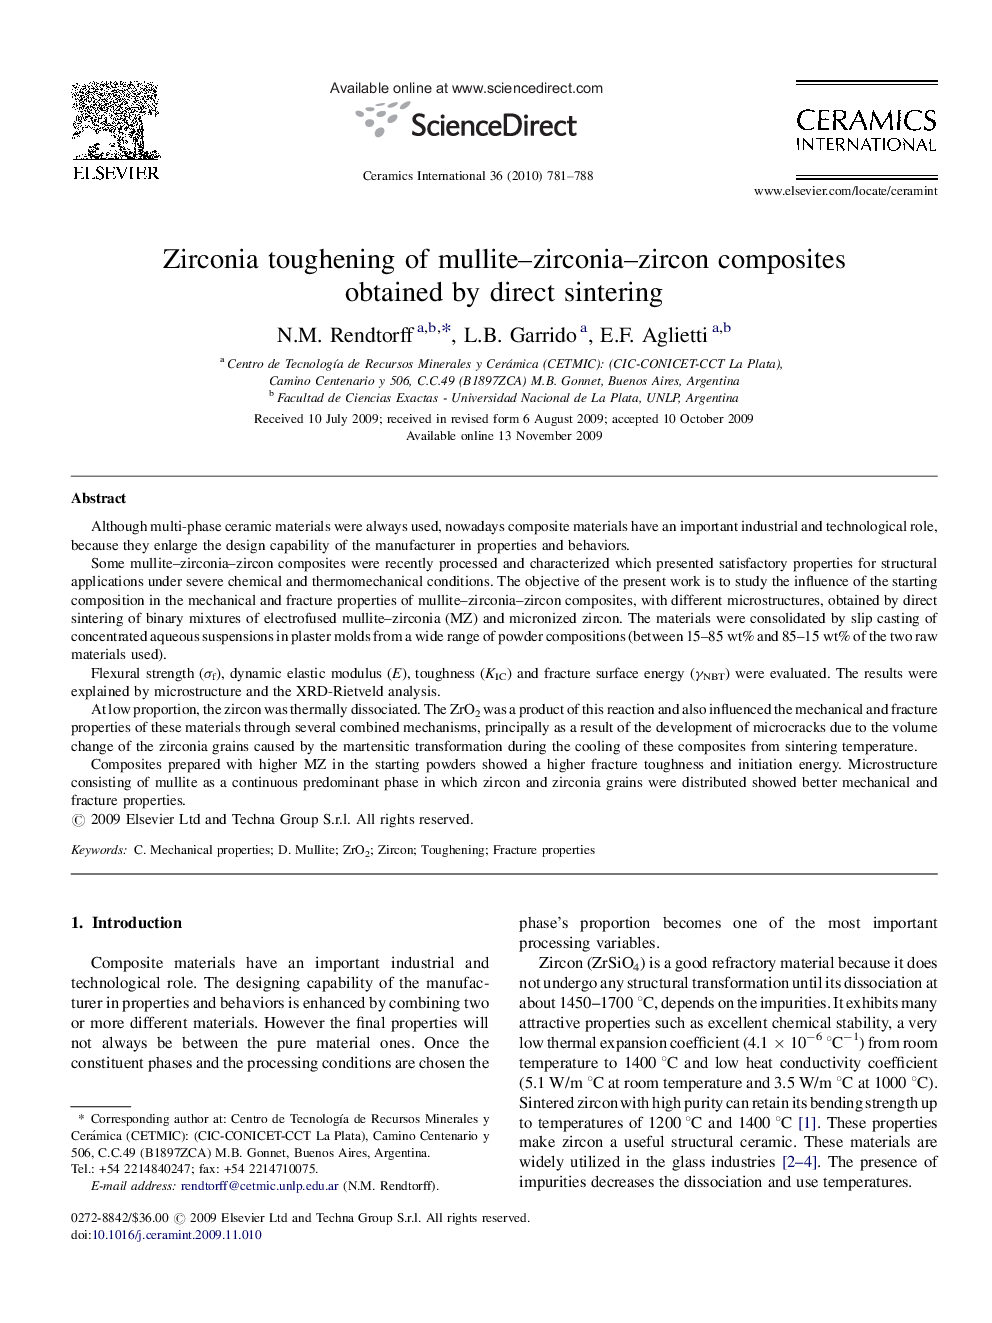 Zirconia toughening of mullite–zirconia–zircon composites obtained by direct sintering